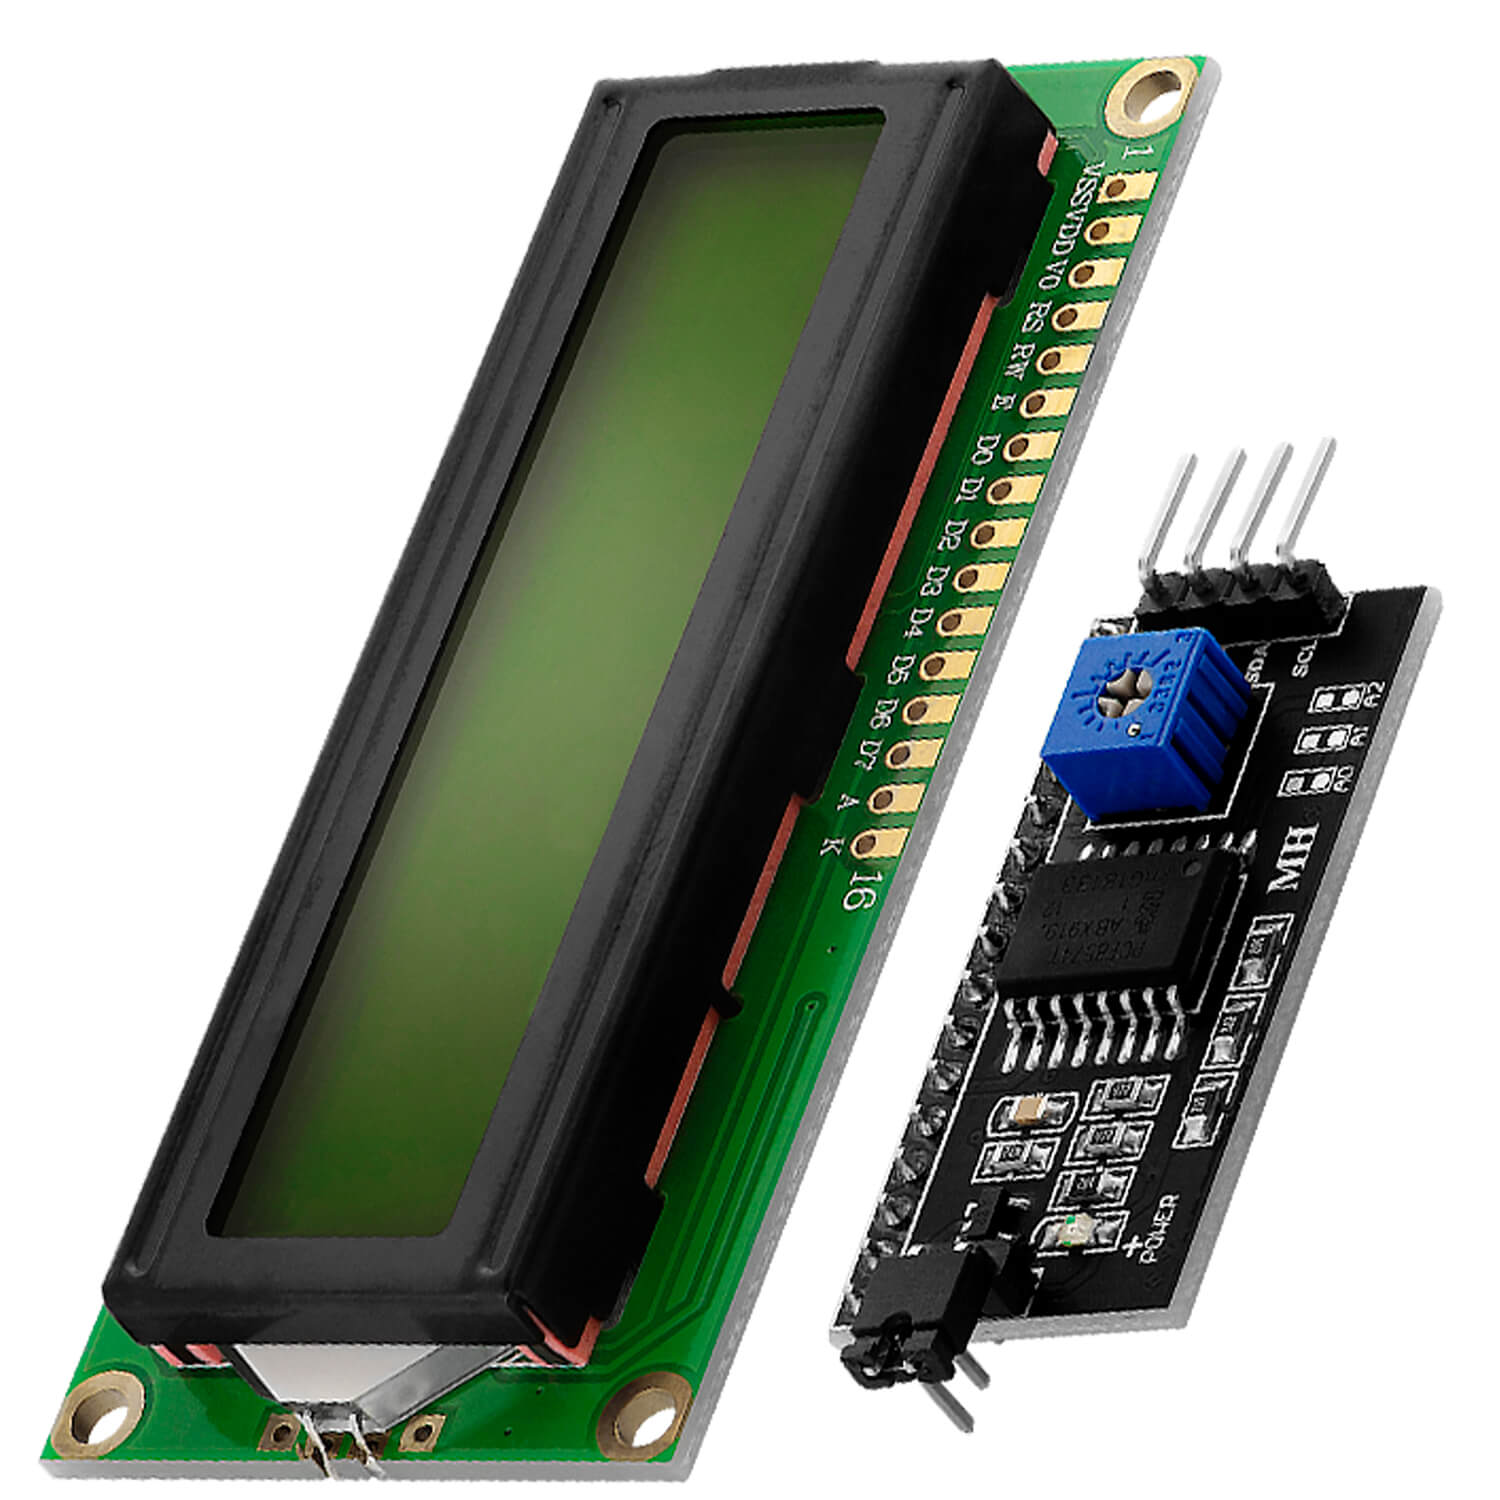 HD44780 1602 LCD Modul Display Bundle mit I2C Schnittstelle 2x16 Zeichen (mit grünem Hintergrund) kompatibel mit Arduino und Raspberry Pi - AZ-Delivery